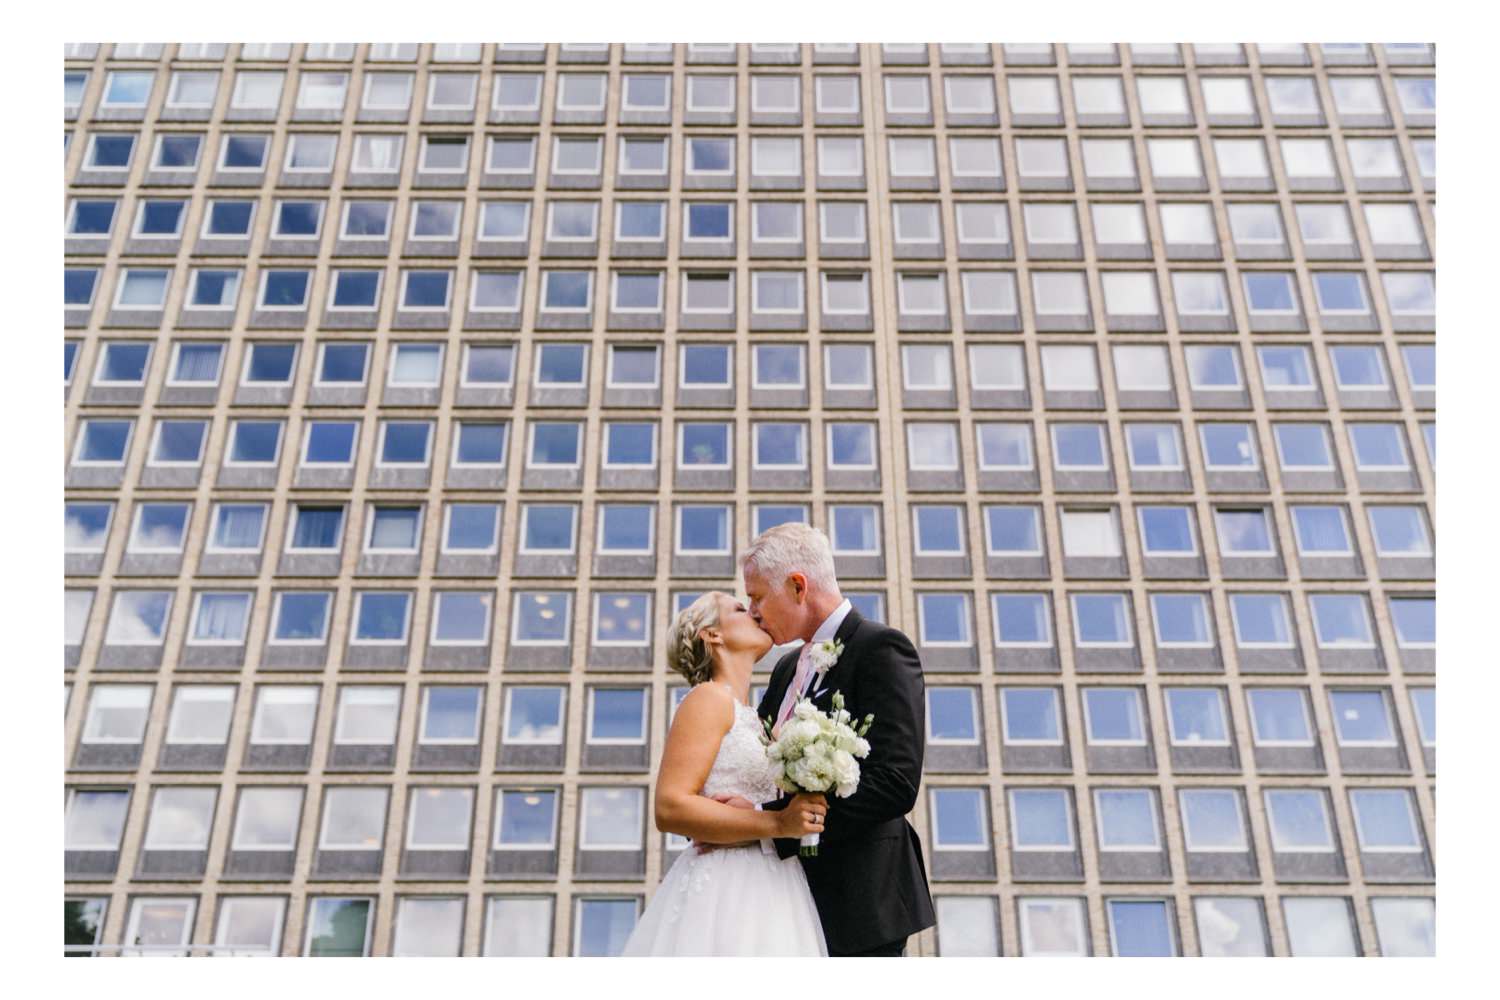 Das Brautpaar beim Portraitshooting vor der Bauhausfassade des Hochhauses des Bezirksamt Eimsbüttel bei der Hochzeit in Hamburg